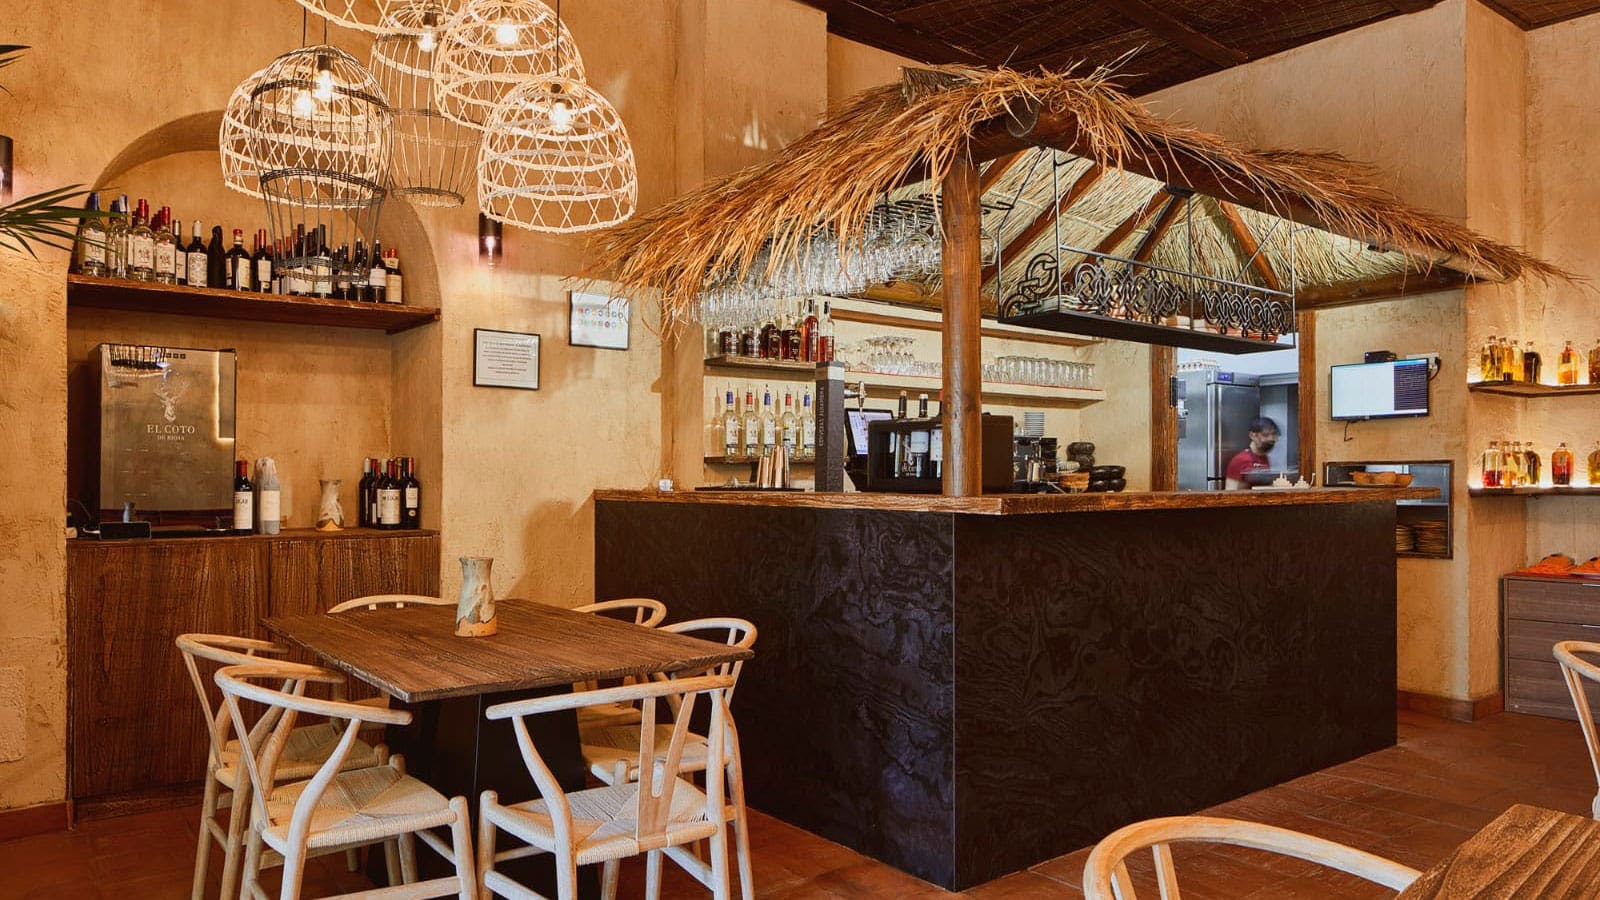 Numero immagine 35 della sezione corrente di Restaurant Quipu di Cosentino Italia